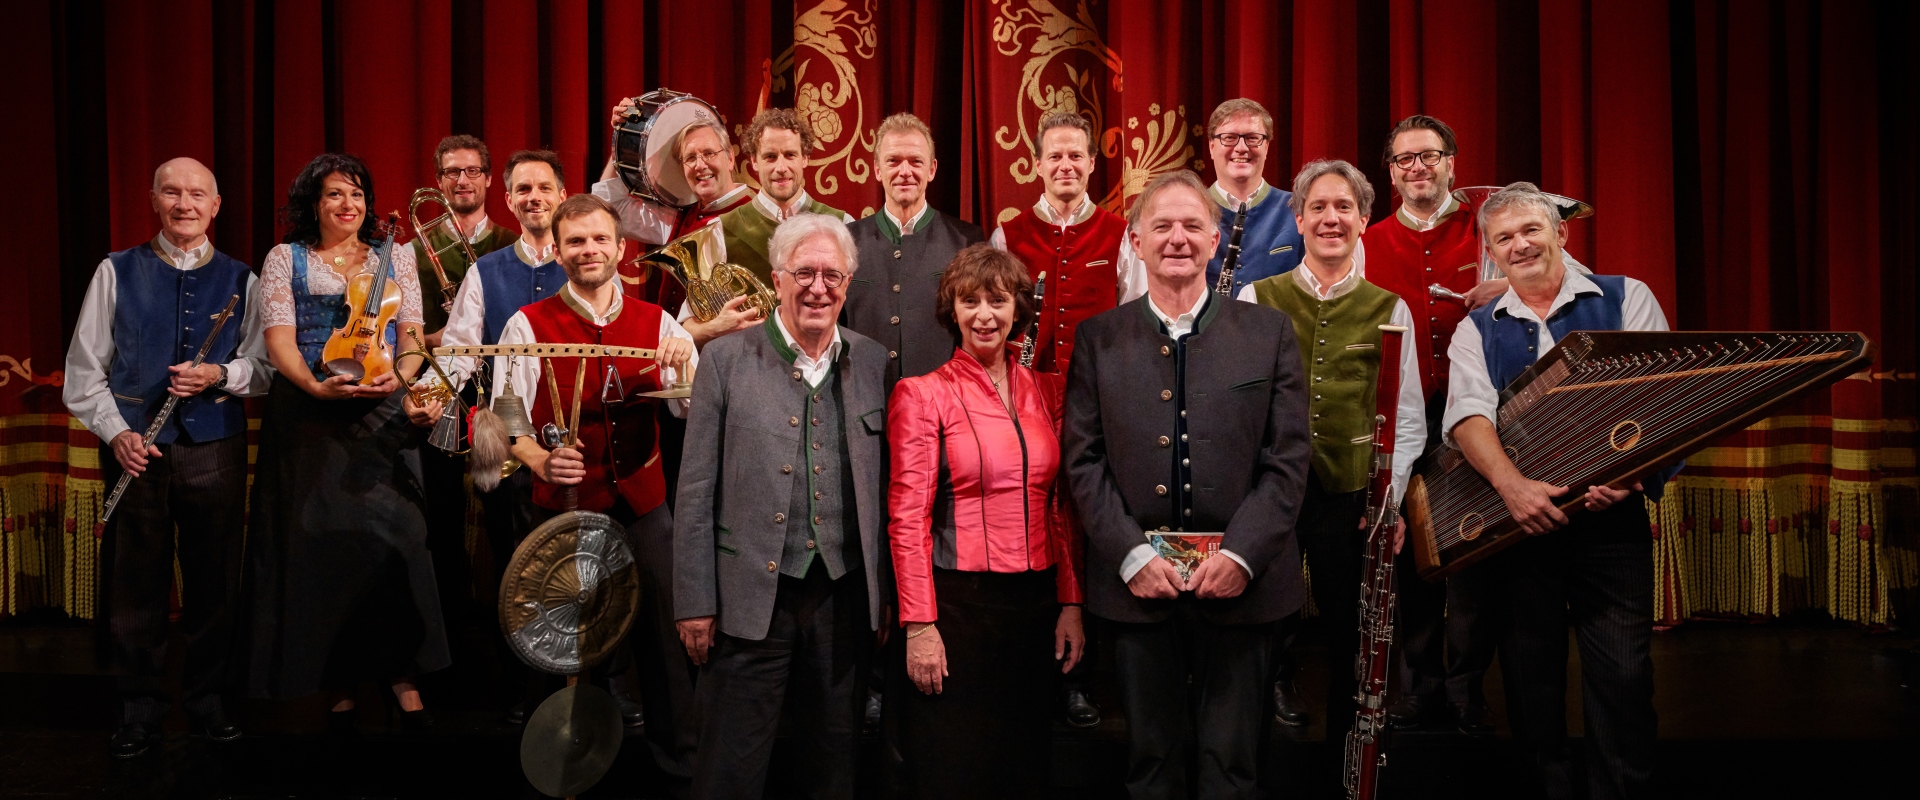 Das Ensemble von Opern auf Bayrisch vor einem roten Bühnenvorhang.